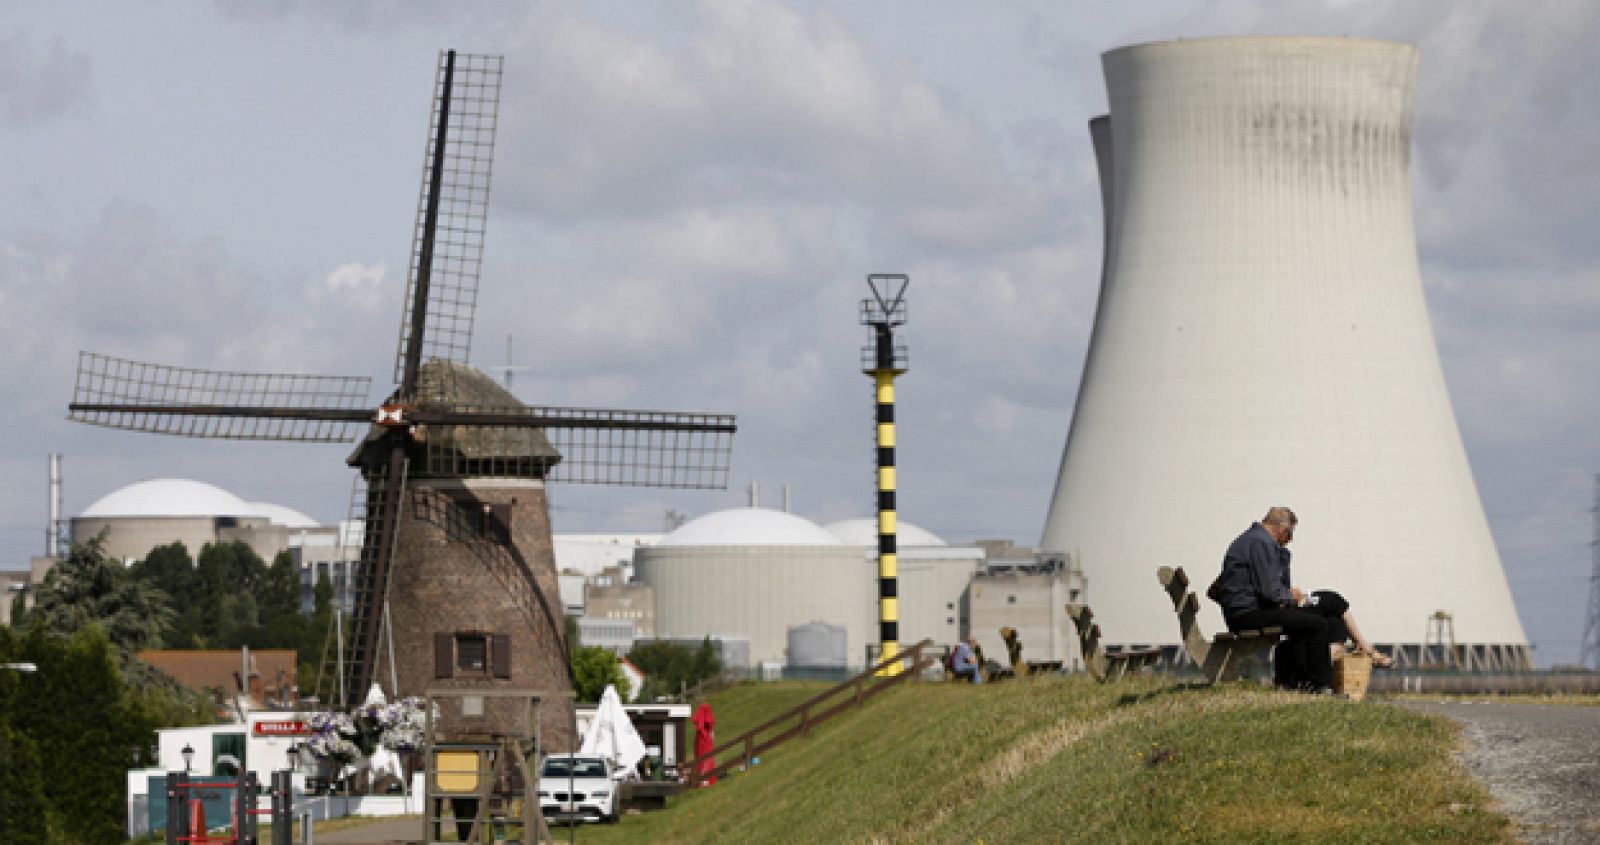 La central nuclear Doel en Bélgica tras su cierre cautelar por las fisuras en su reactor.